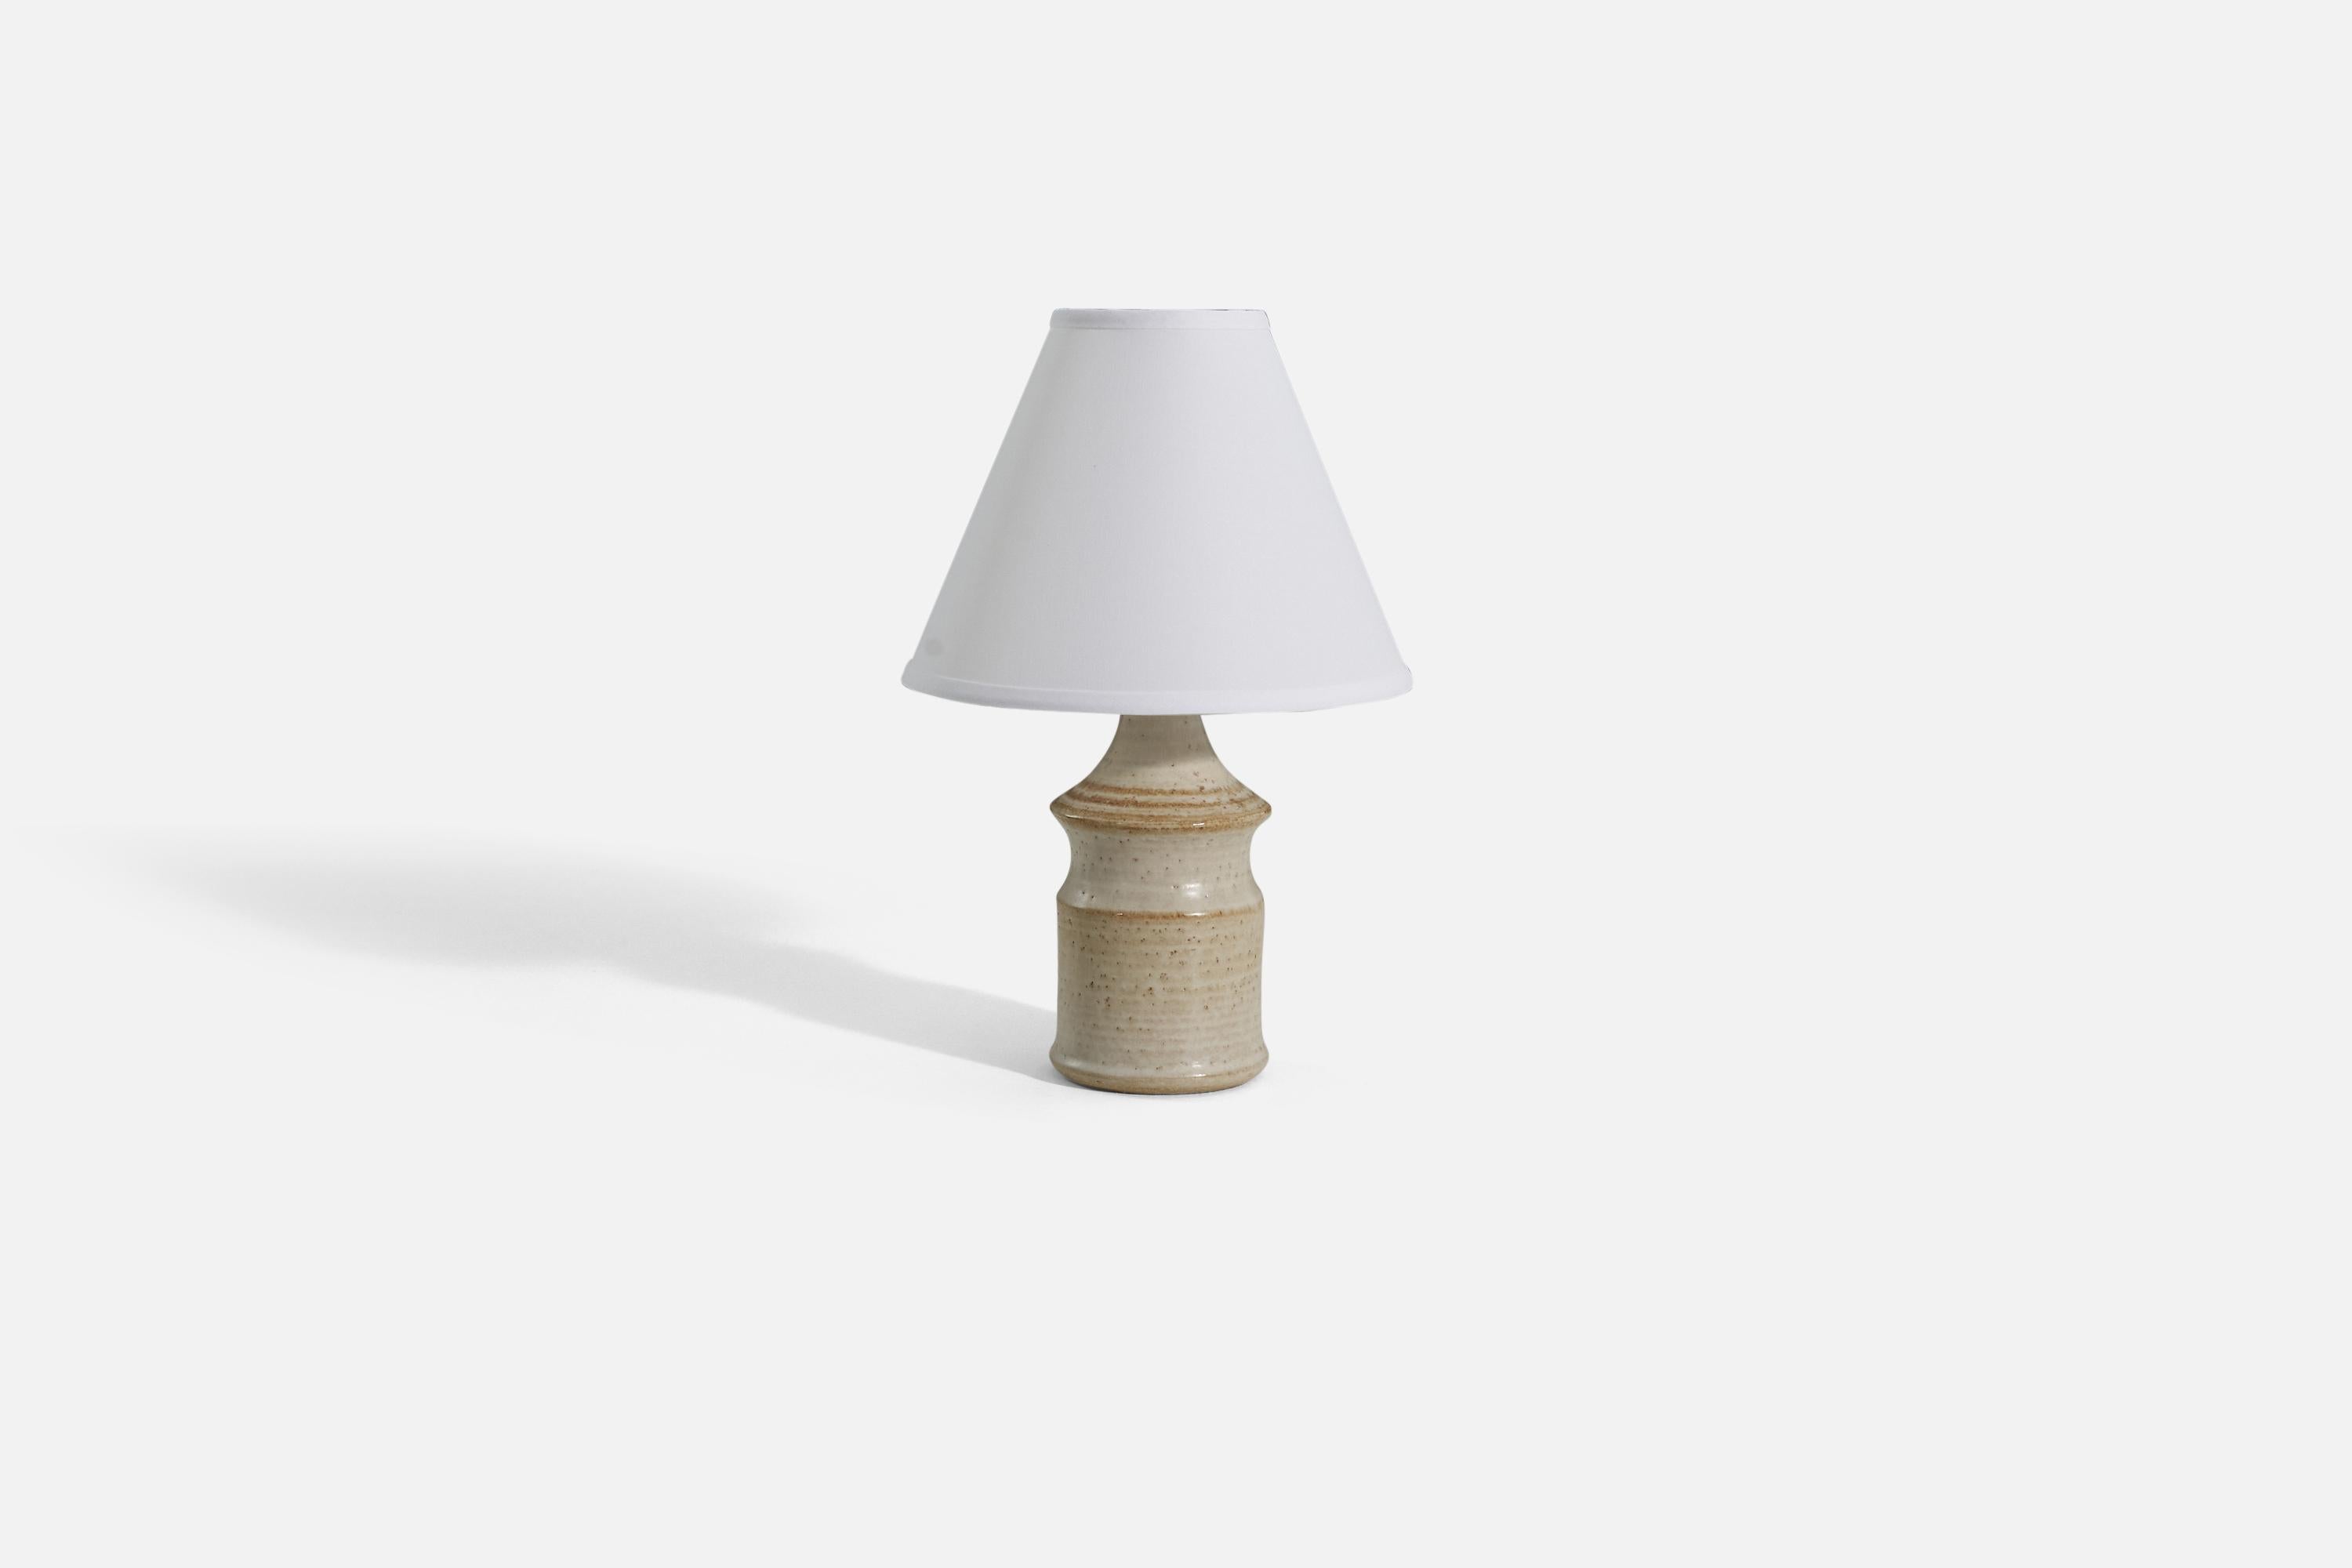 Lámpara de mesa a rayas blancas y marrones fabricada por Søholm Keramik, situada en la isla de Bornholm, Dinamarca. 

Se vende sin pantalla. 

Dimensiones de la lámpara (pulgadas) : 12 x 4,5 x 4,5 (Alto x Ancho x Fondo)
Dimensiones Pantalla